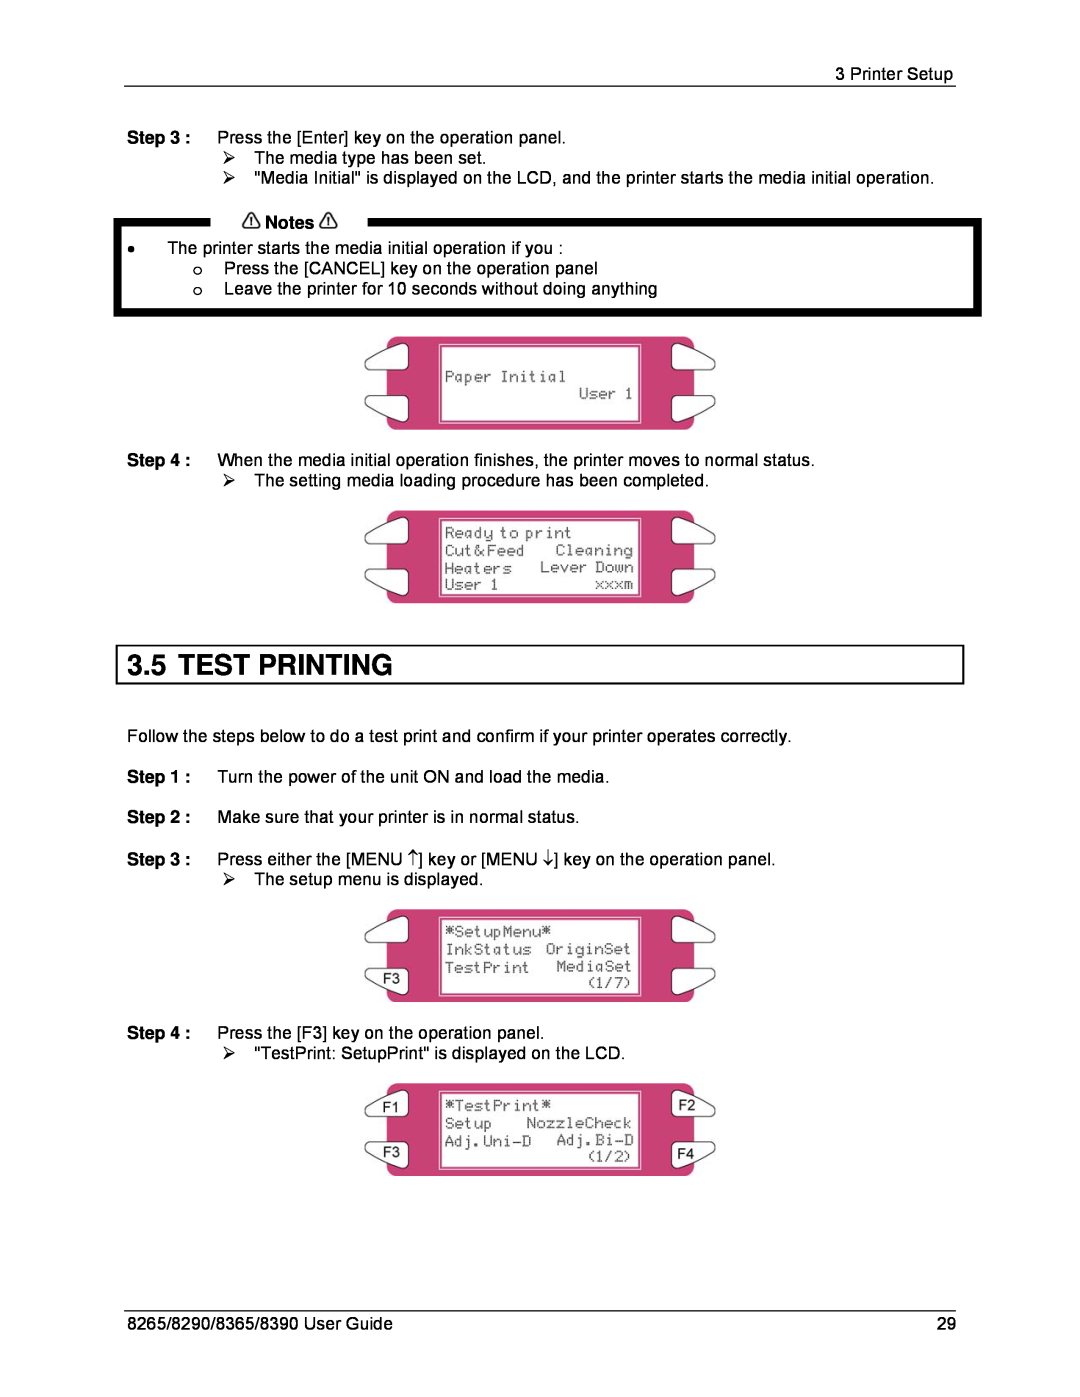 Xerox 8265, 8290, 8390, 8365 manual Test Printing 